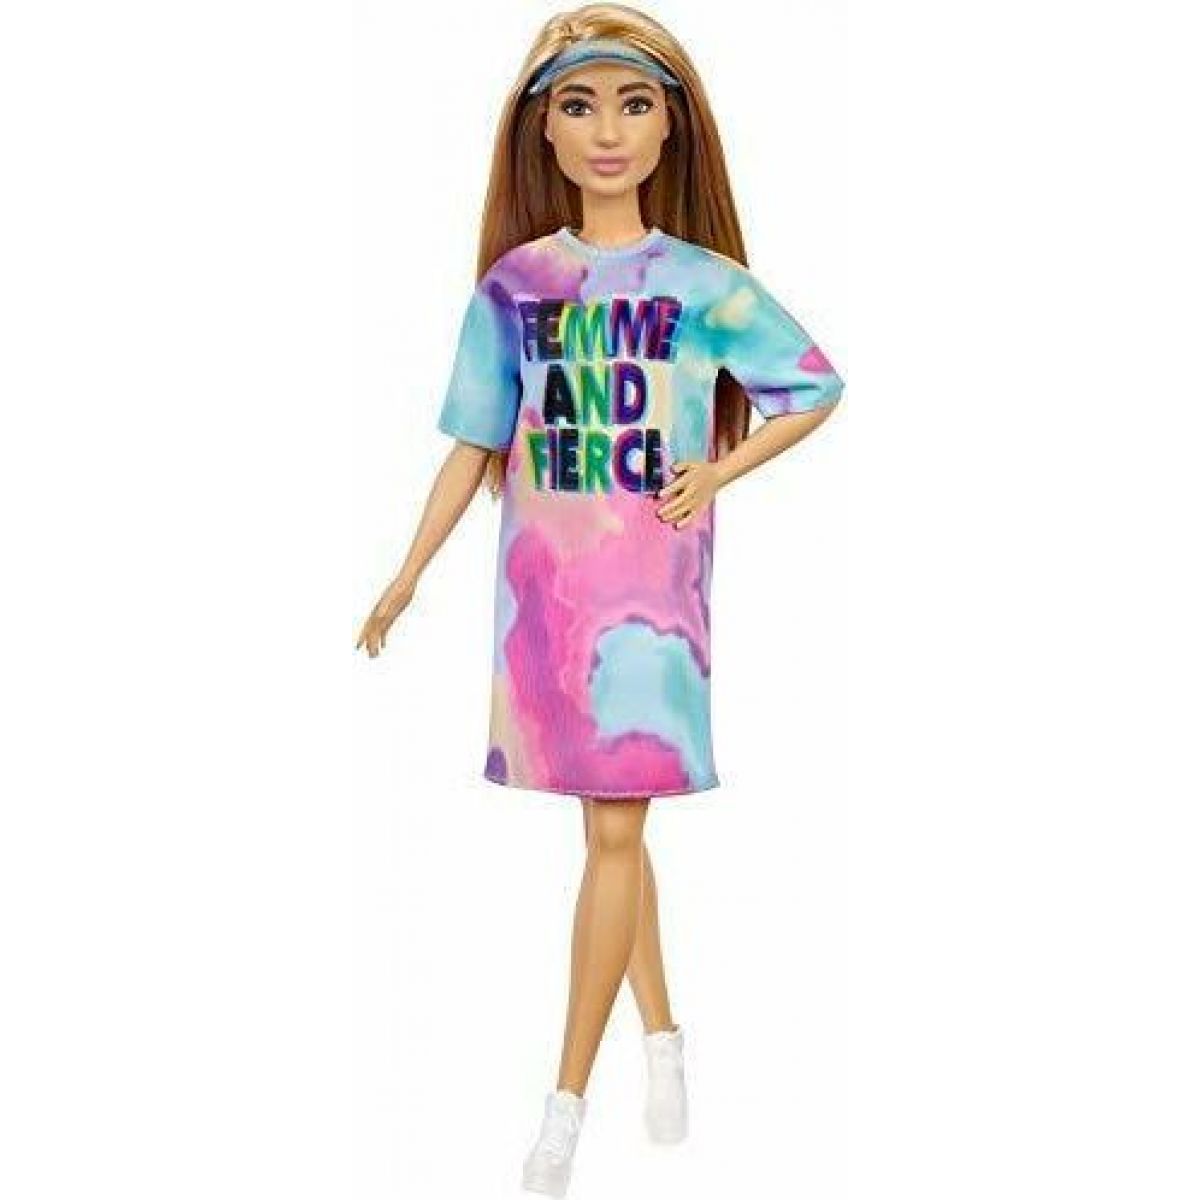 Mattel Barbie modelka femme and Fierce šaty